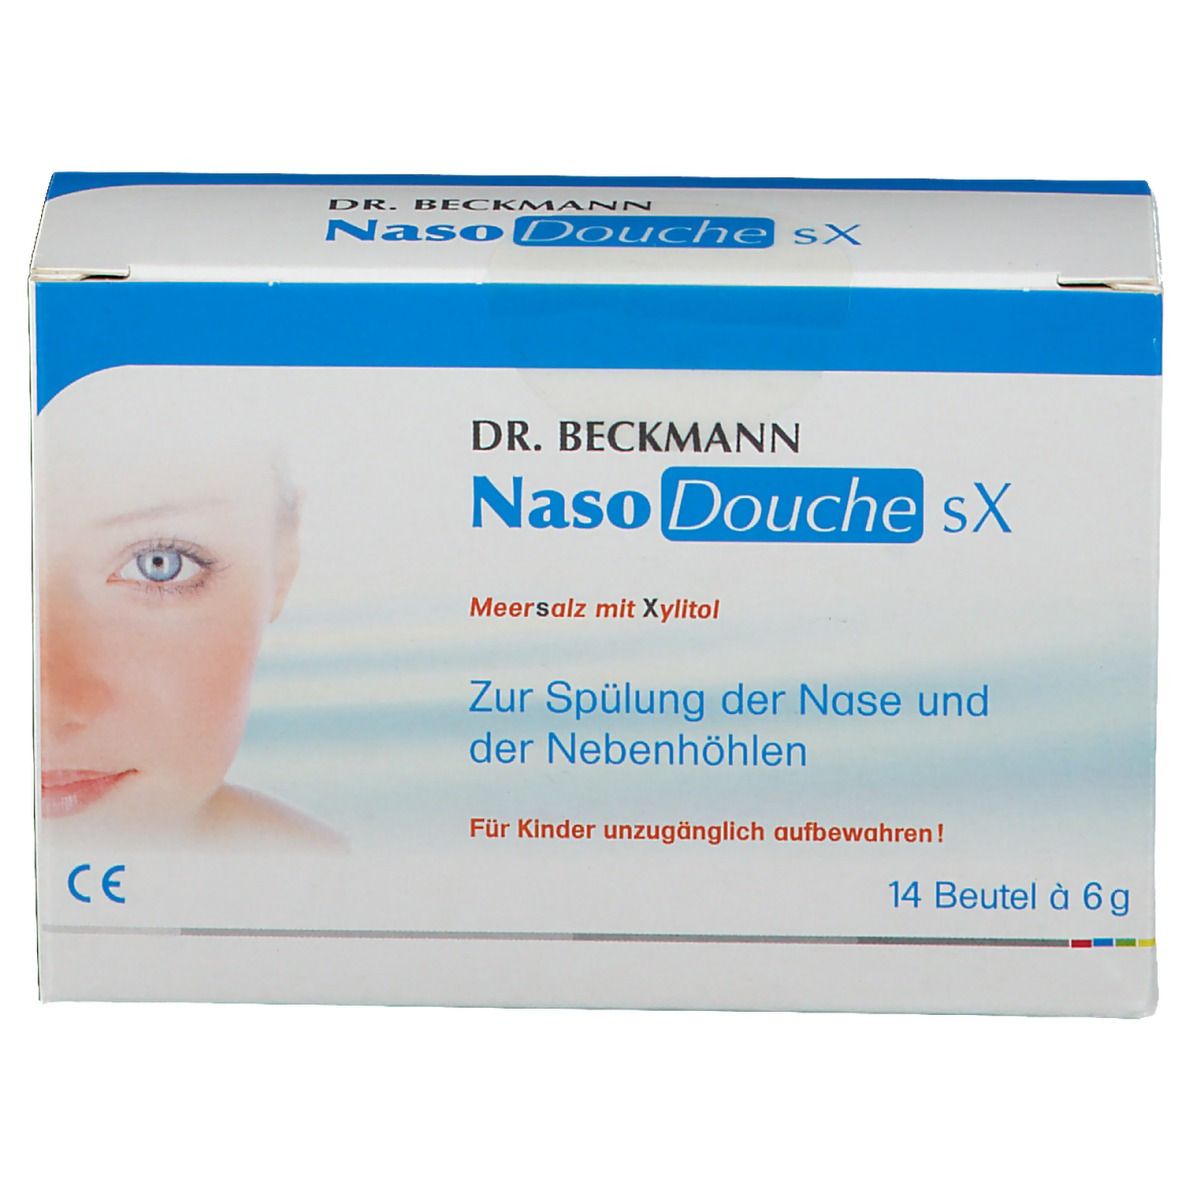 Dr. Beckmann NasoDouche sX